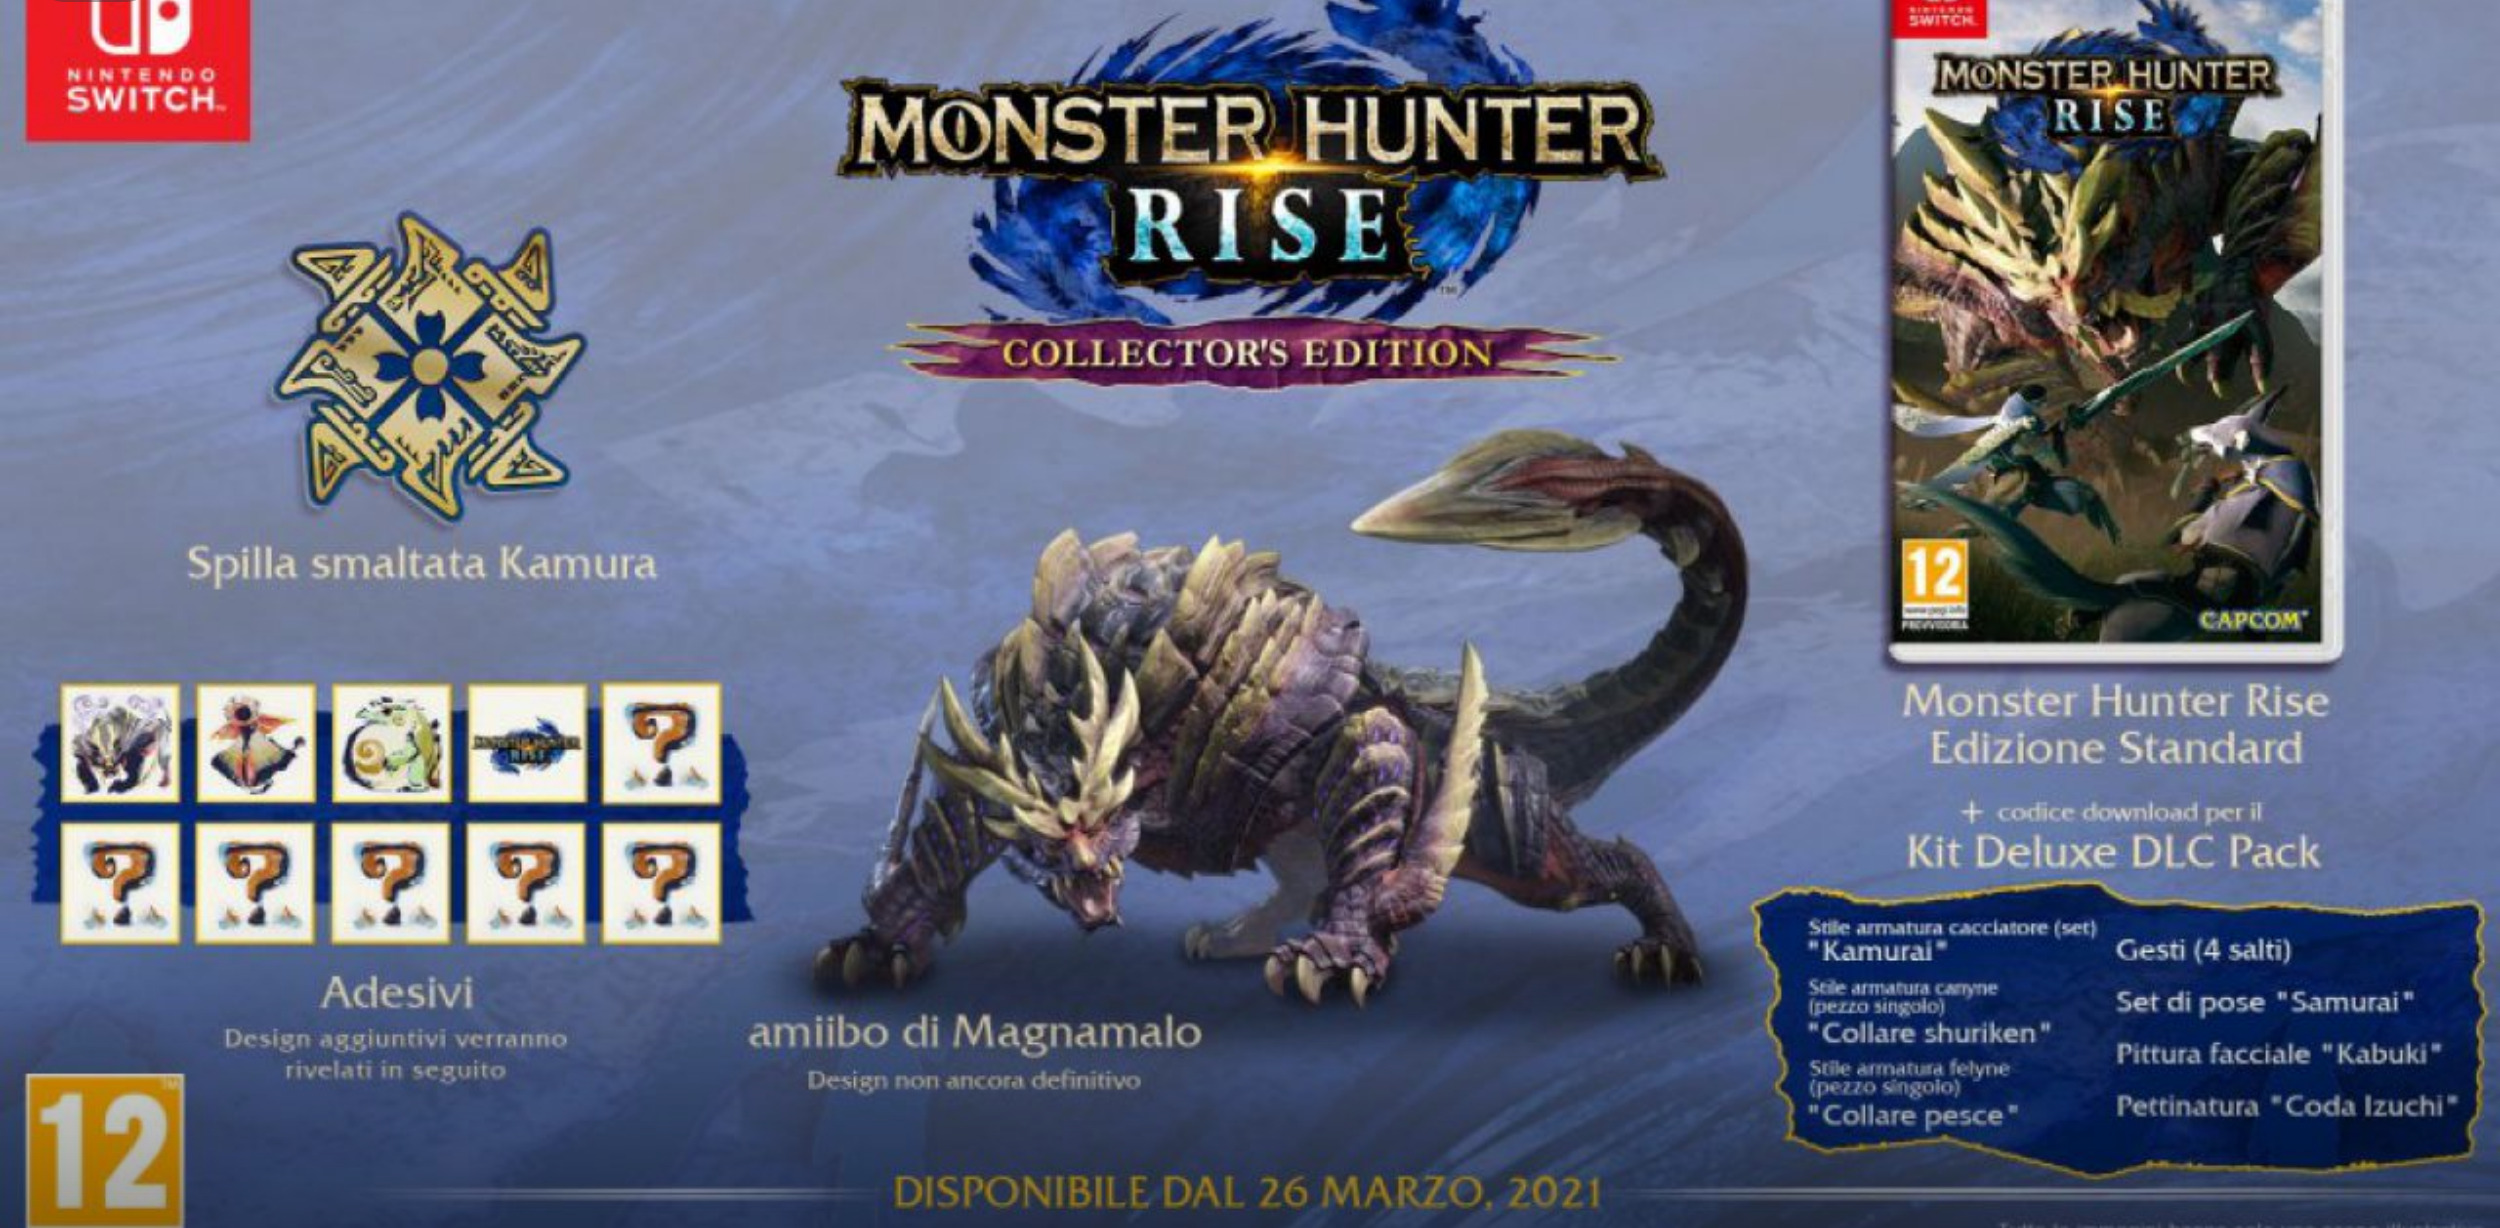 monster hunter rise pc release